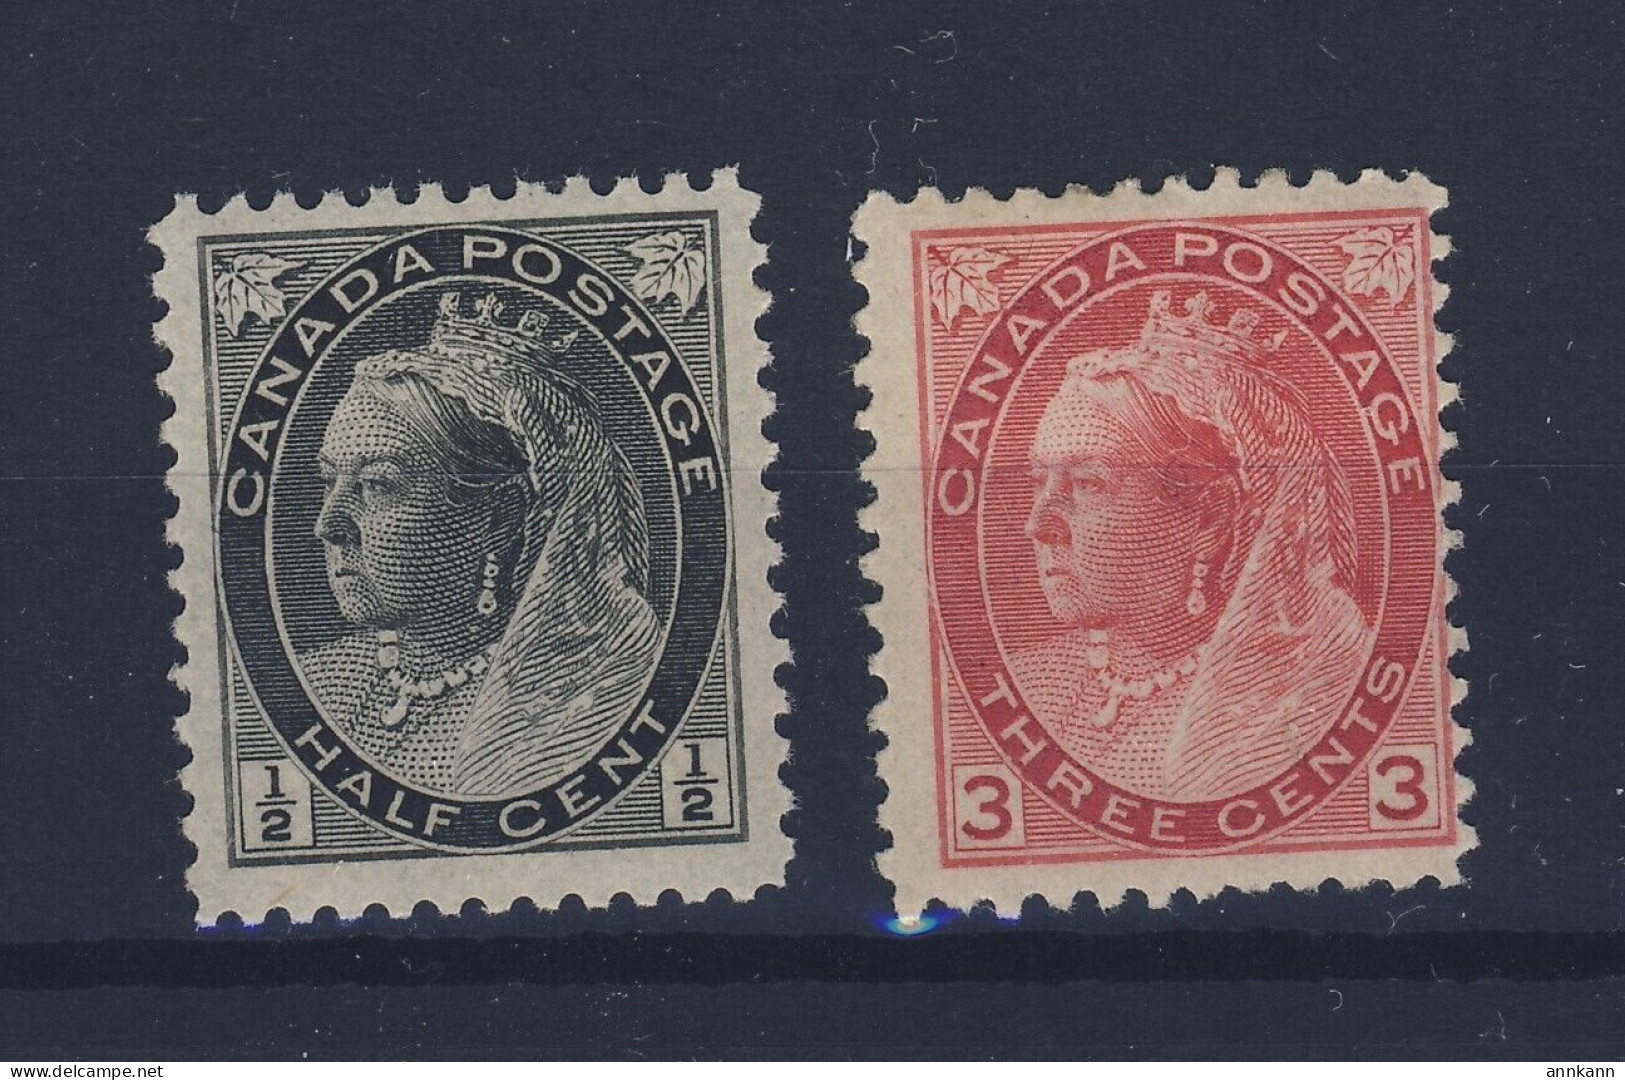 2x Canada Victoria Numeral Stamps; #74-1/2c MNH F/VF #78-3c MH F GV = $65.00 - Nuovi